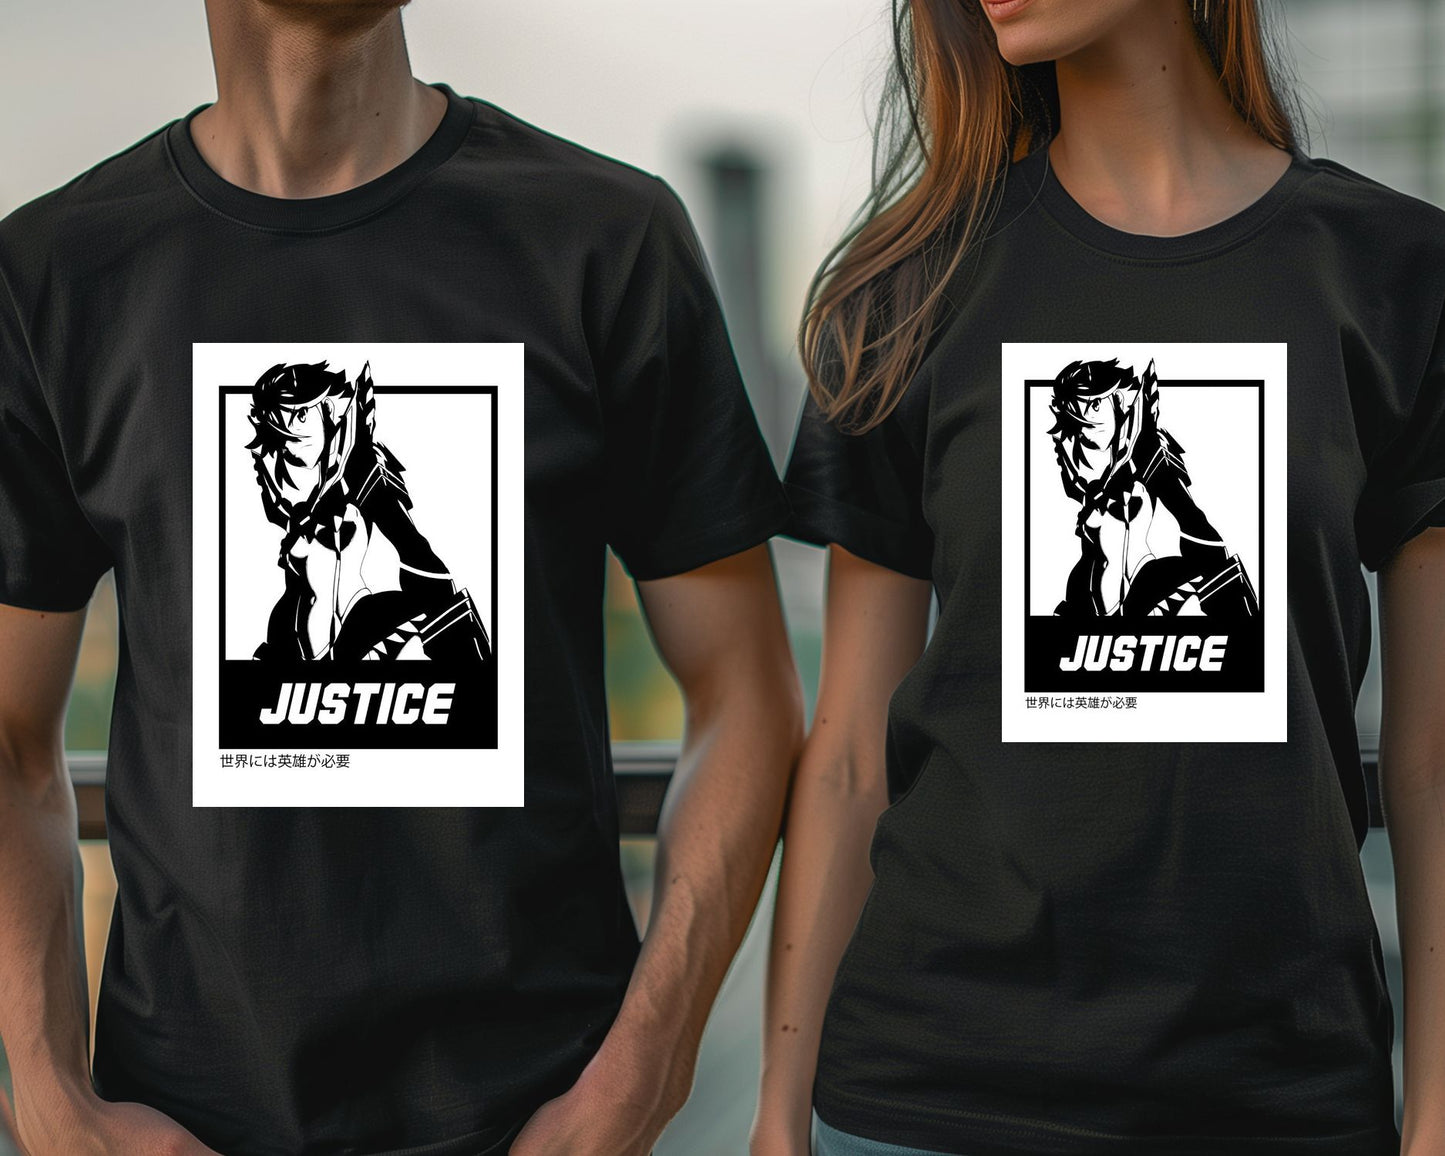 Justice 4 - @FreakCreator